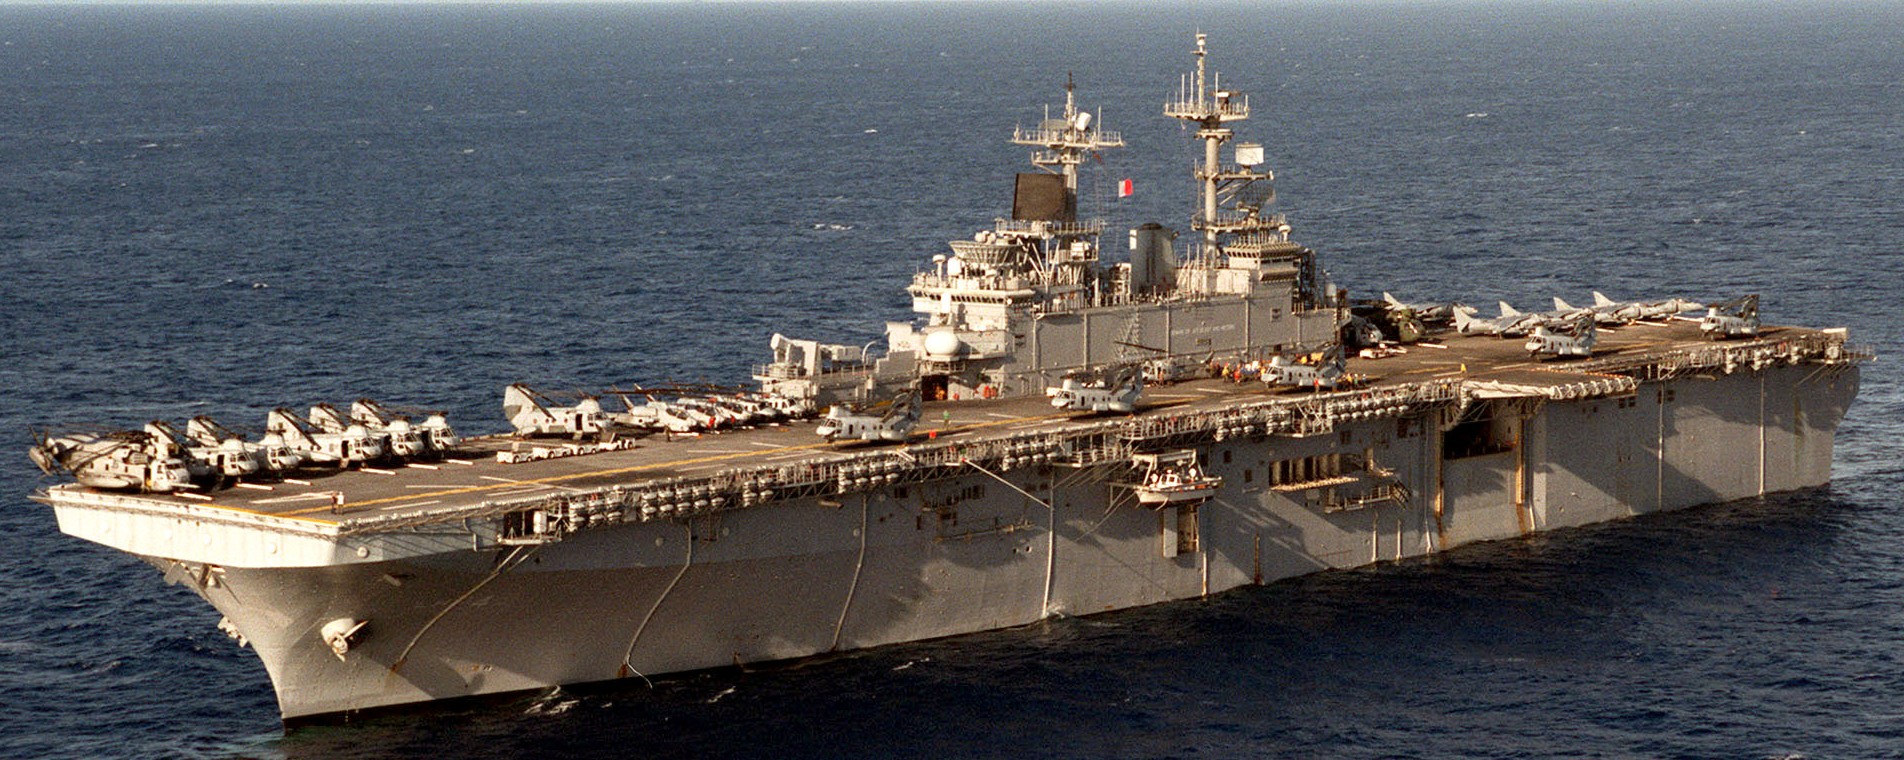 lhd-4 uss boxer wasp class amphibious assault ship dock landing us navy marines hmm-364 rimpac 1998